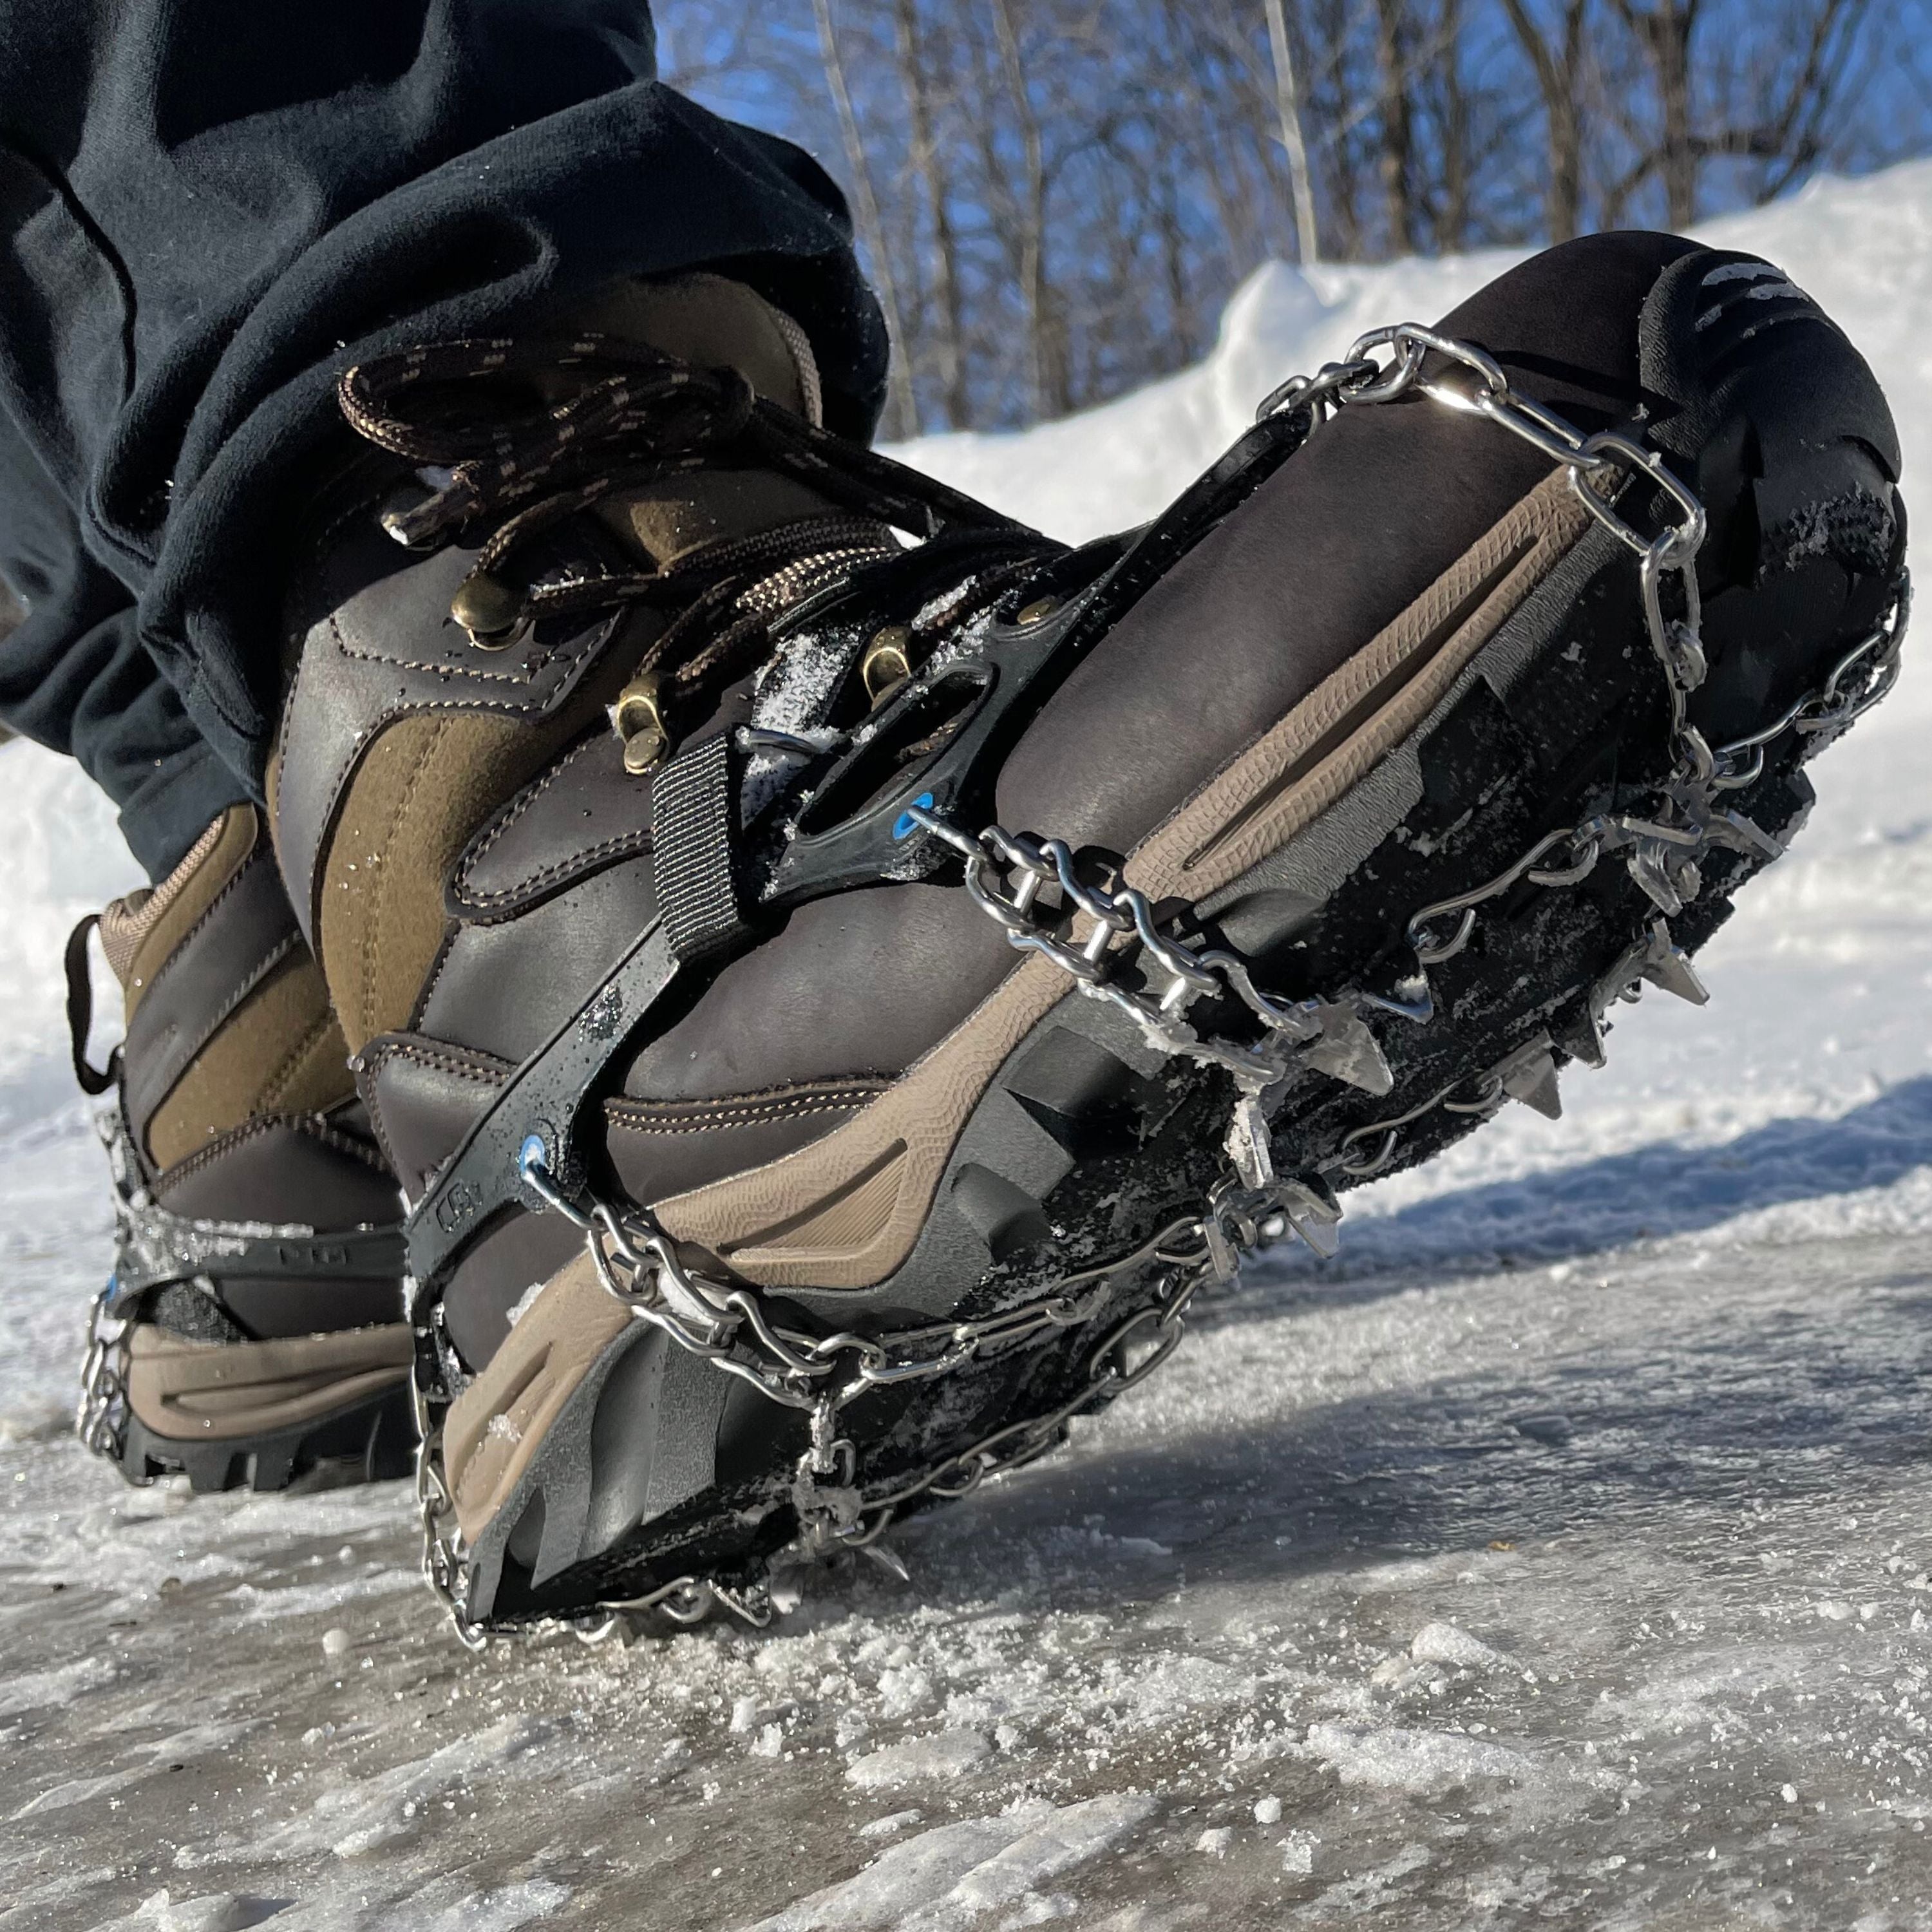 Randonnée hivernale : bottes, raquettes ou crampons?